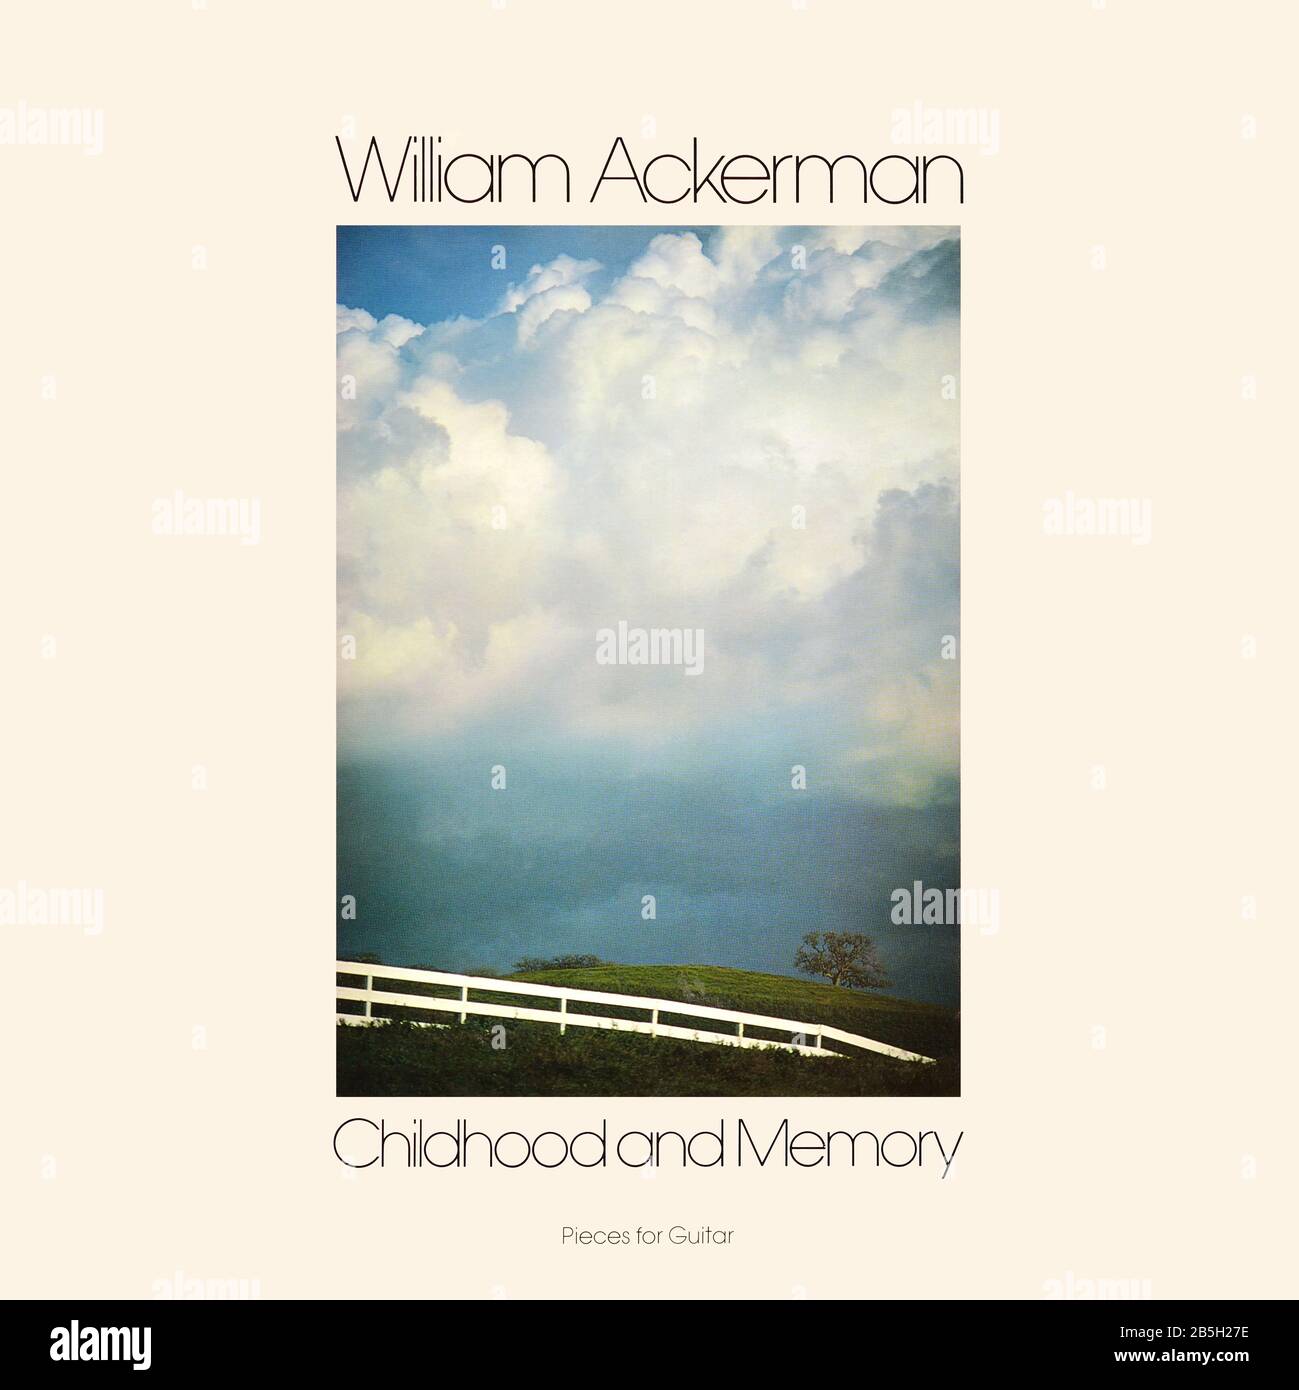 William Ackerman - copertina originale dell'album in vinile - Childhood and Memory (pezzi per chitarra) - 1979 Foto Stock